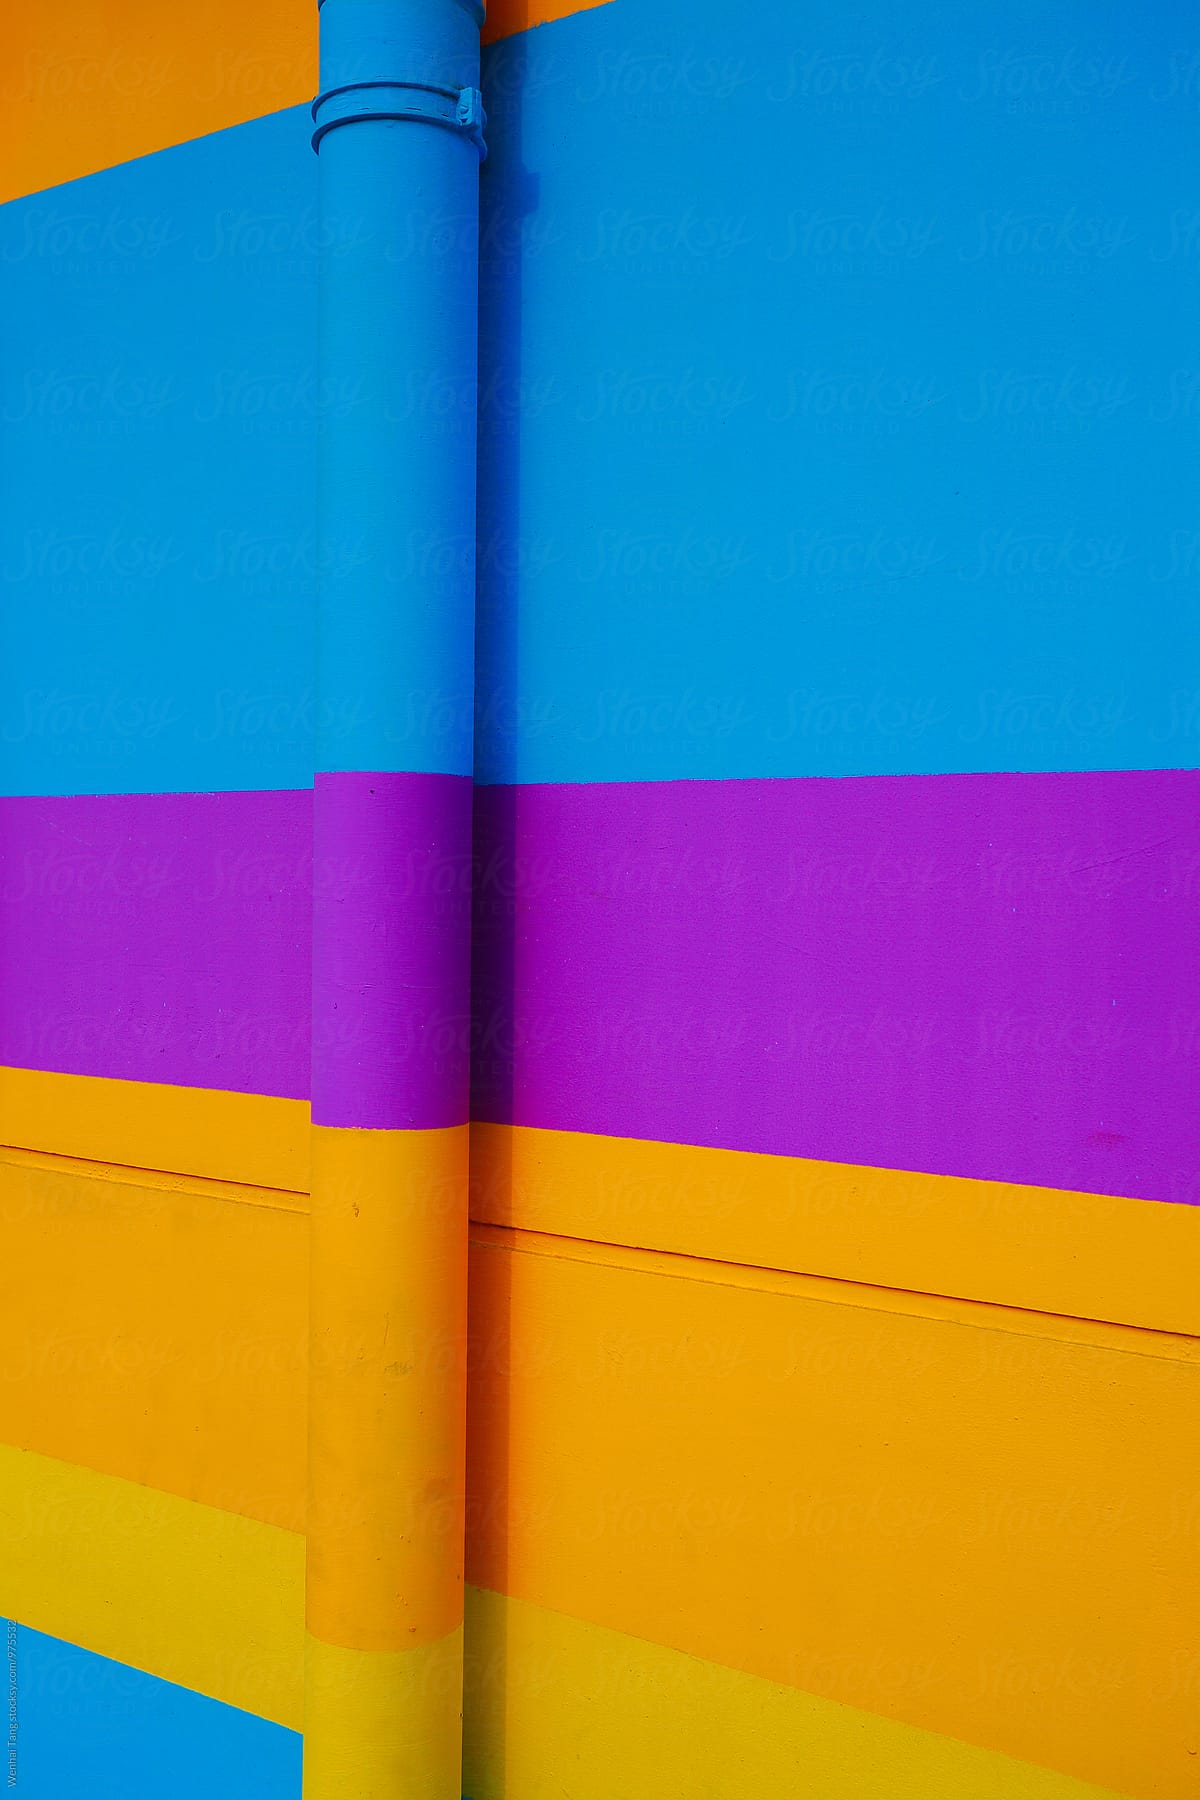 Hình nền tường với những vạch ngang xanh tím vàng cam tạo nên không gian độc đáo và sáng tạo cho màn hình thiết bị của bạn. Kết hợp các gam màu đầy quyến rũ, hình ảnh sẽ khiến bạn say mê!